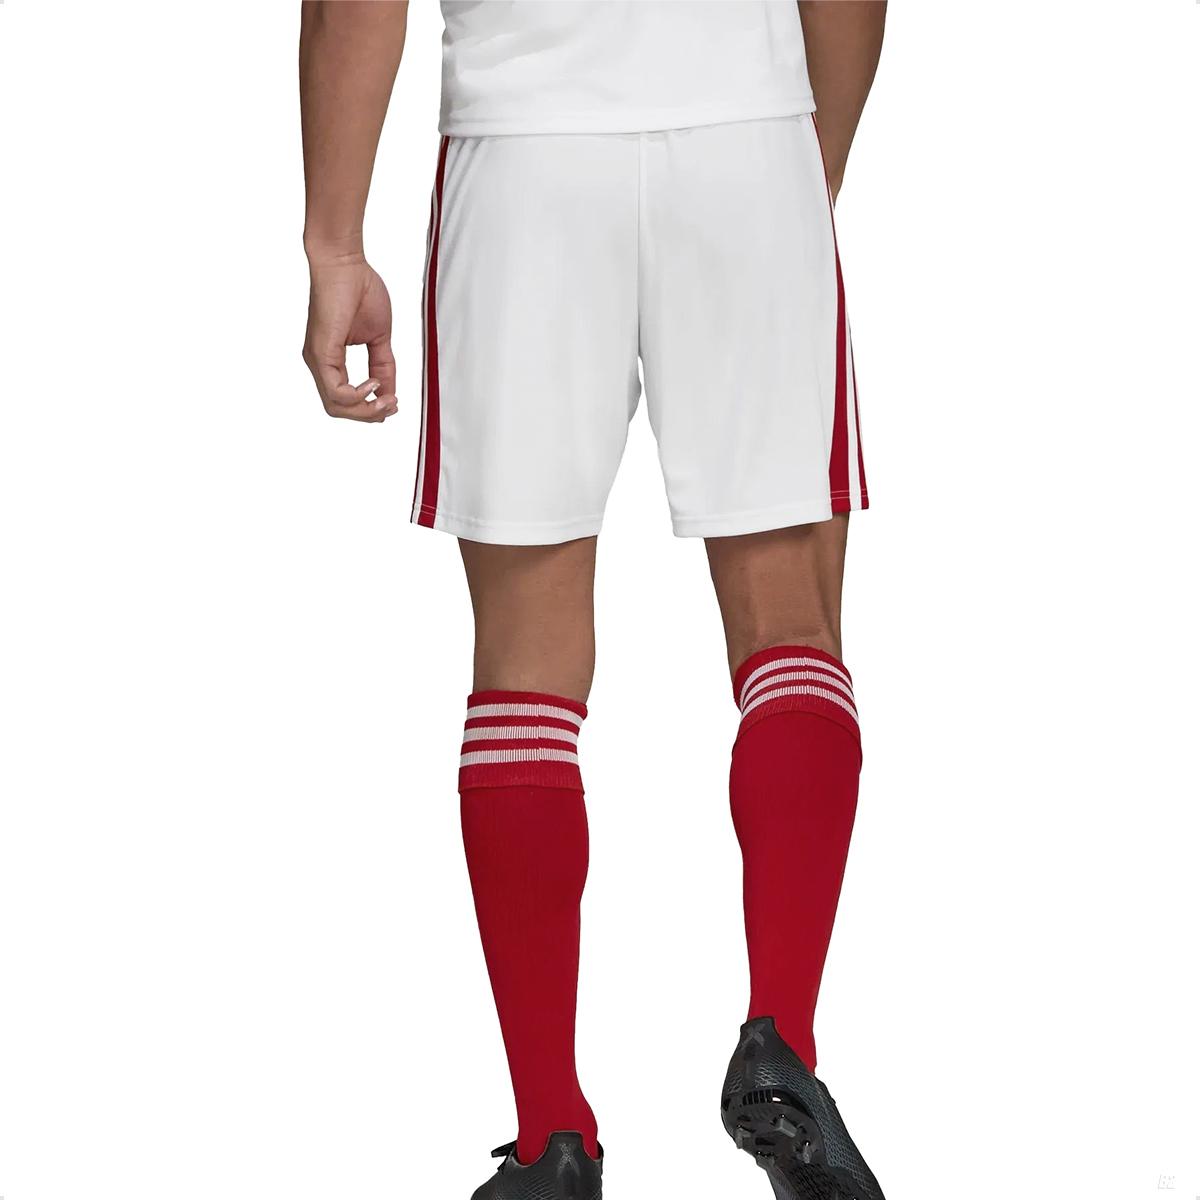 https://cdn.bnws3.com.br/b2online.com.br/image/cache/data/produtos/adidas/bermuda/shorts-adidas-squadra-21-masculino-branco---vermelho-8218-23-05-24-00-1200x1200.jpg